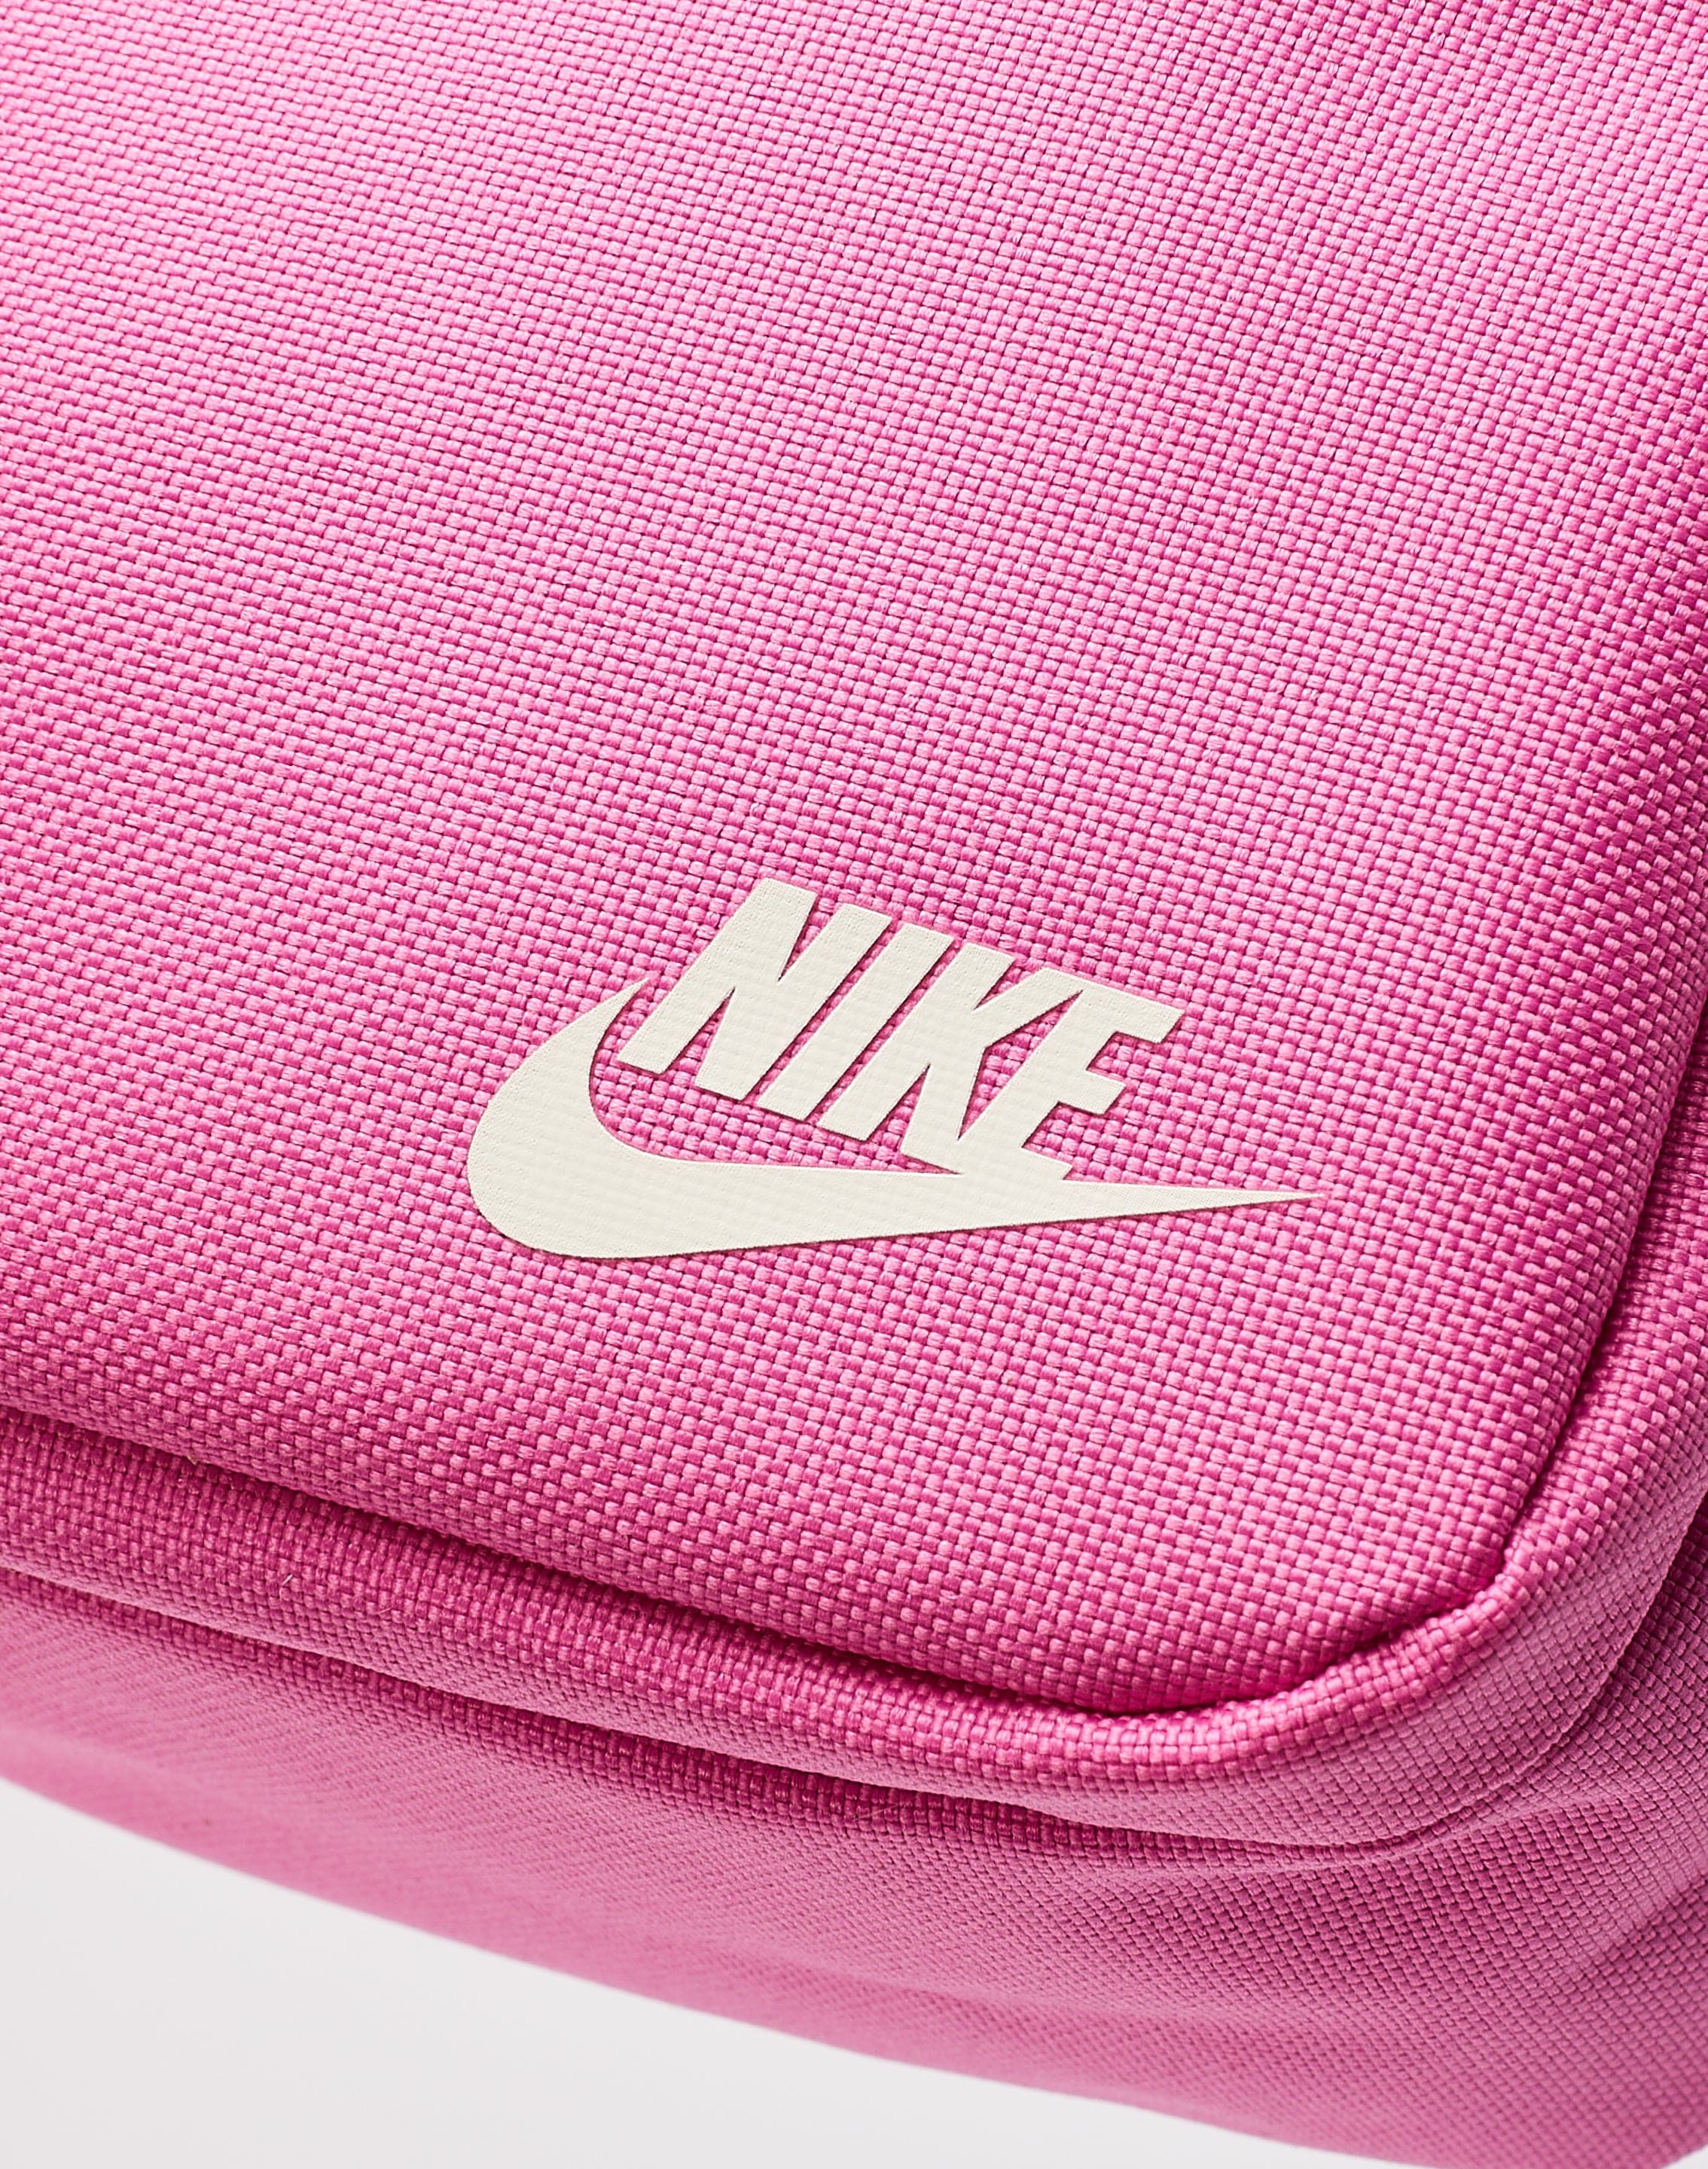 Nike Unisex Shoulder Bag Crossbody Purse NWT School Handbag | eBay